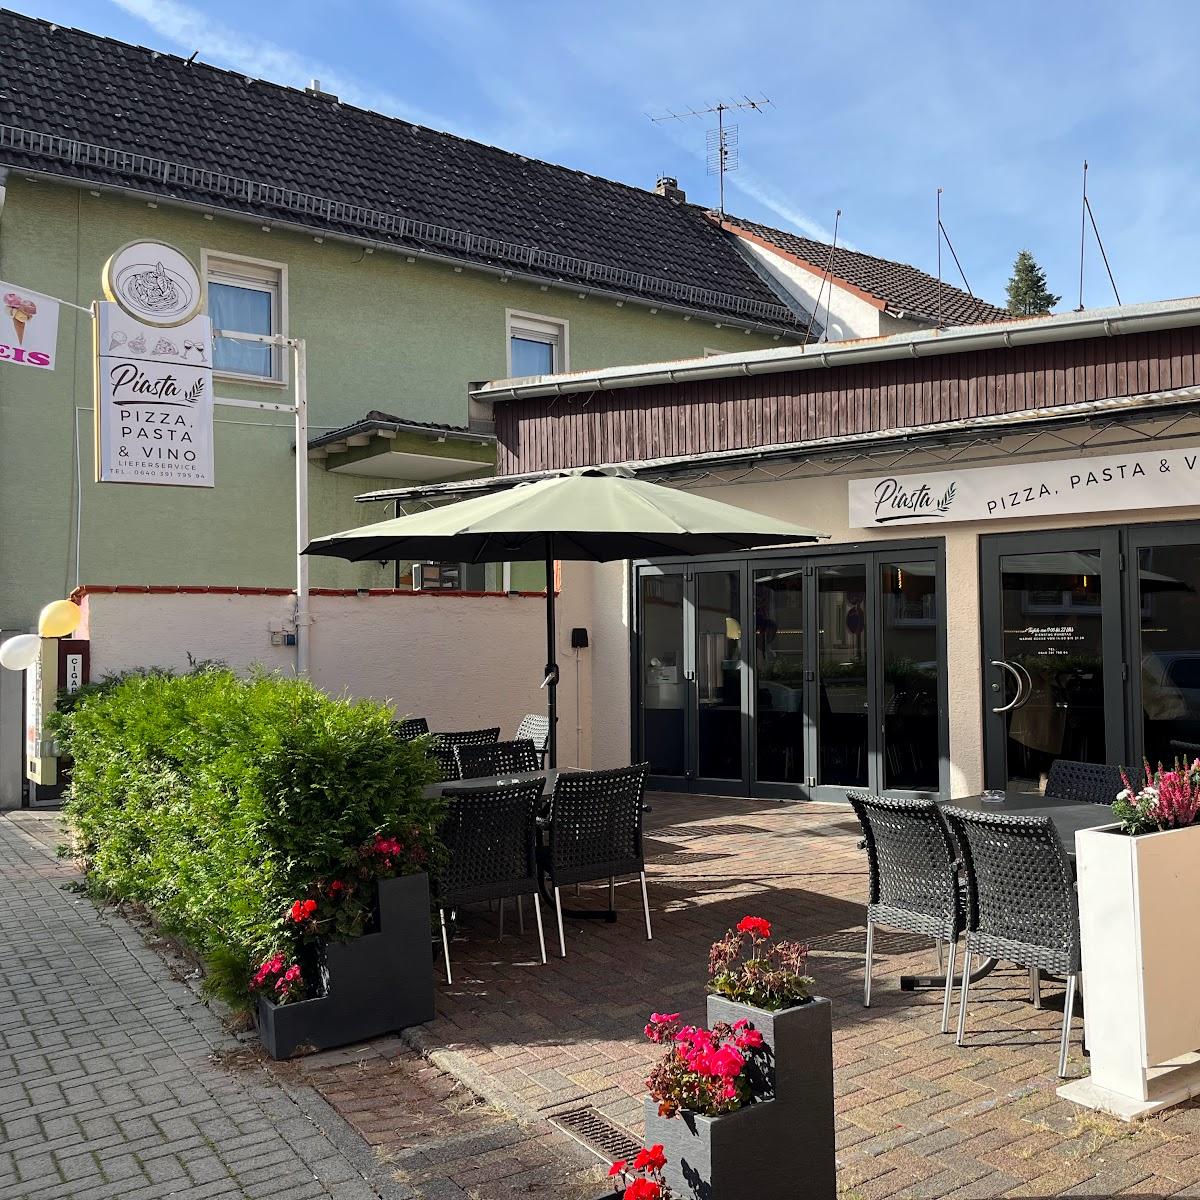 Restaurant "Piasta" in Pohlheim